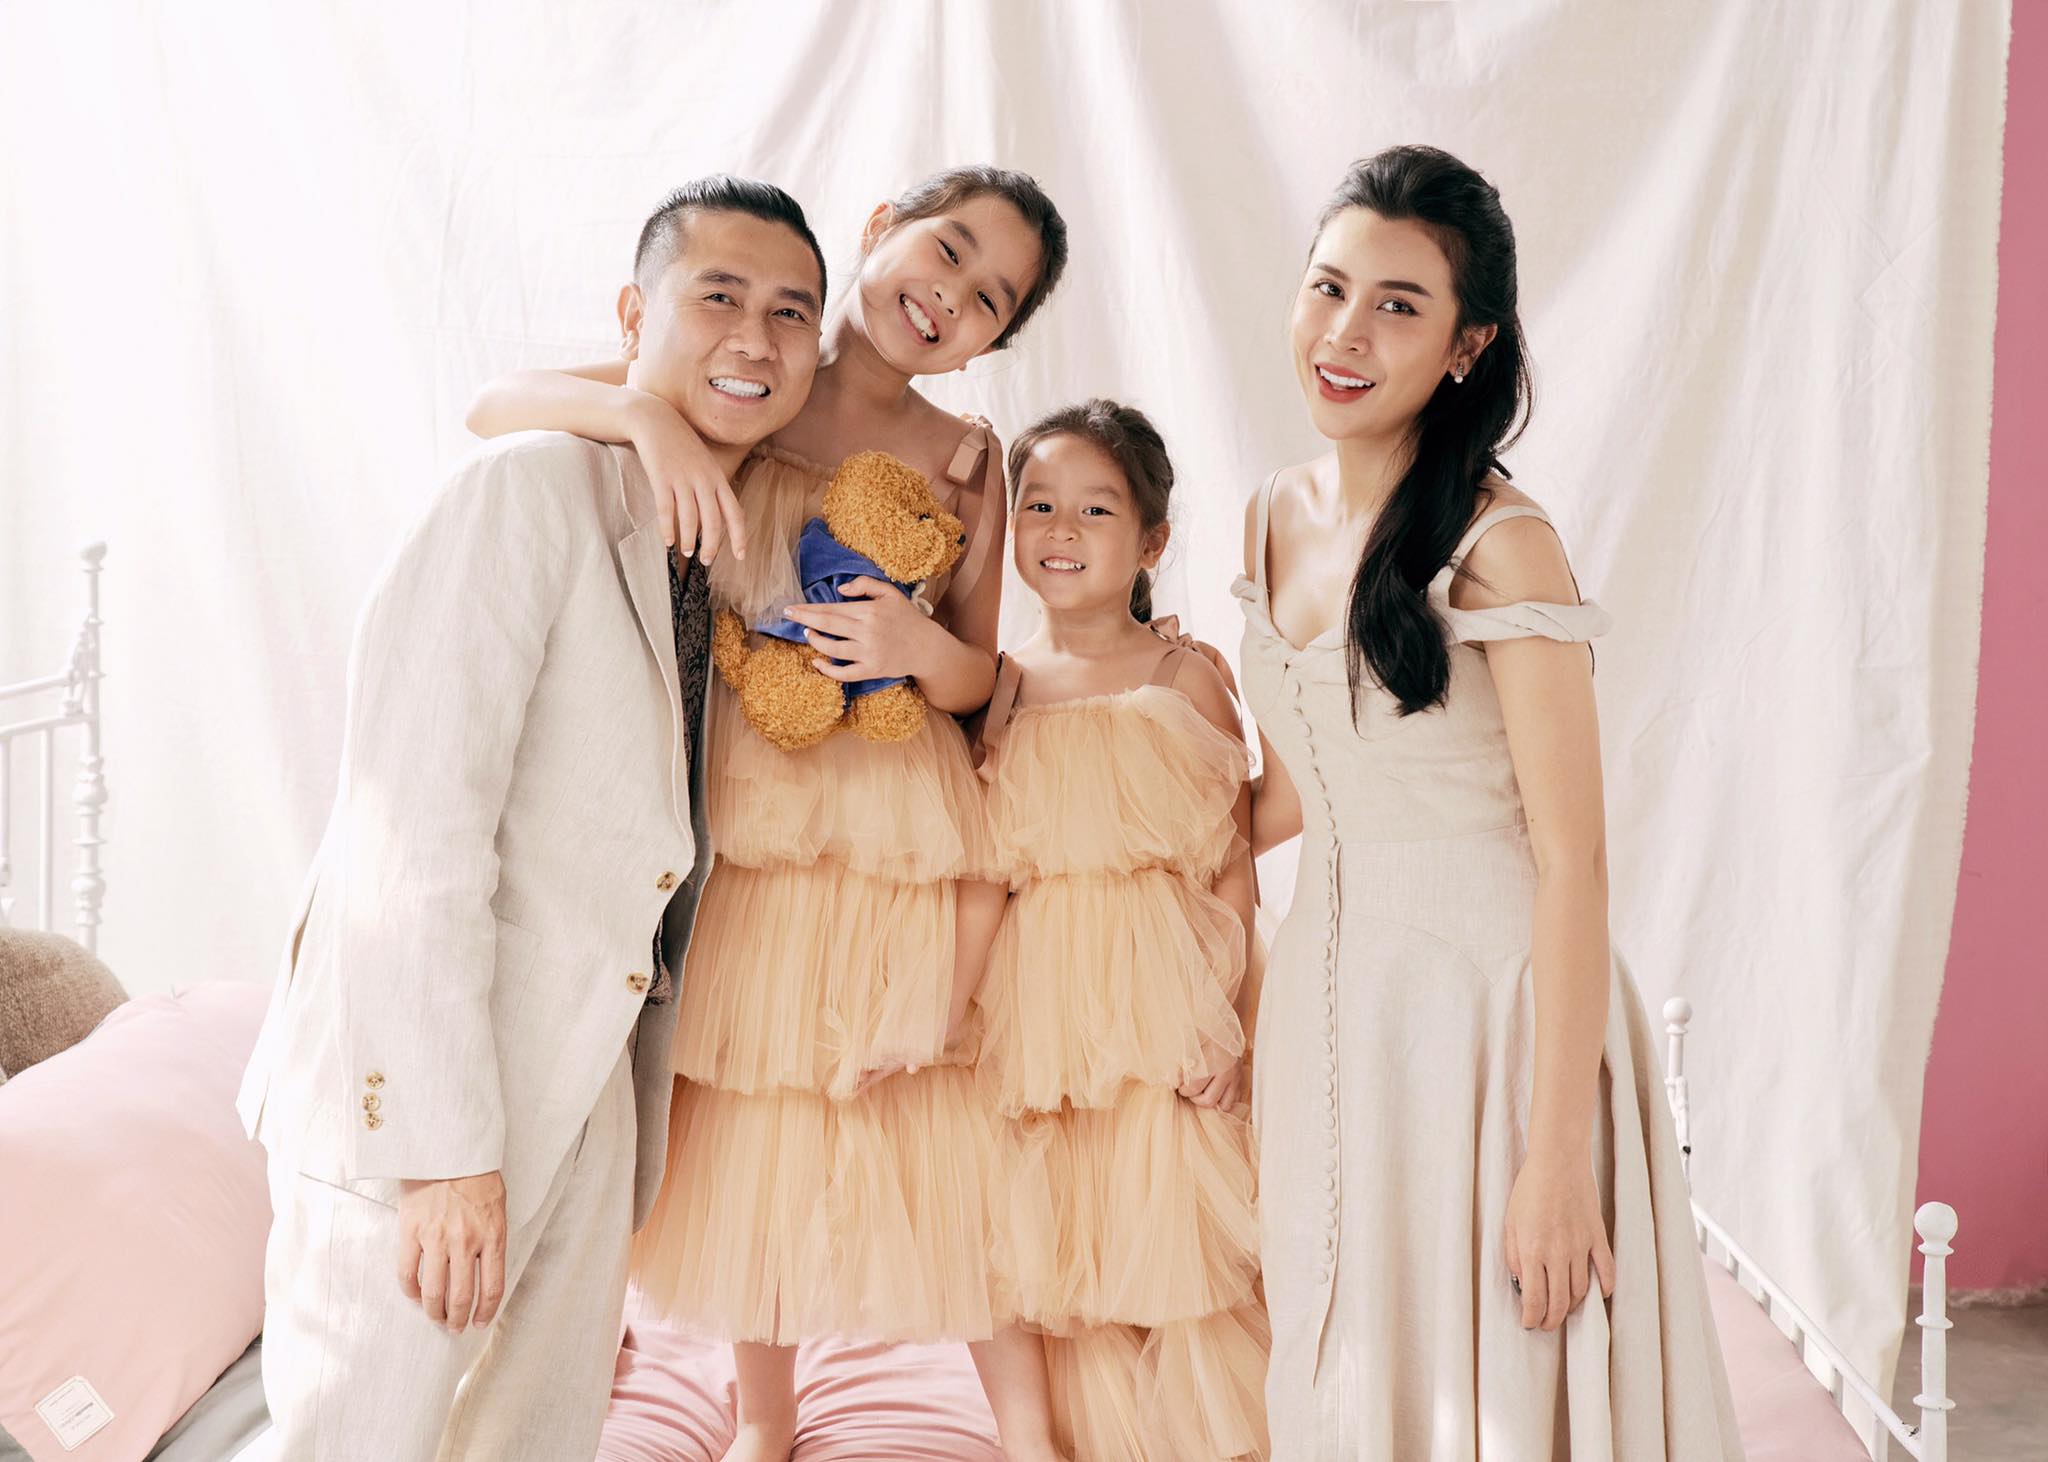 Hãy thưởng thức bức ảnh đầy cảm xúc về gia đình Lưu Hương Giang để thấy rằng tình thân và sự đoàn kết là điều quan trọng nhất trong cuộc sống của chúng ta.